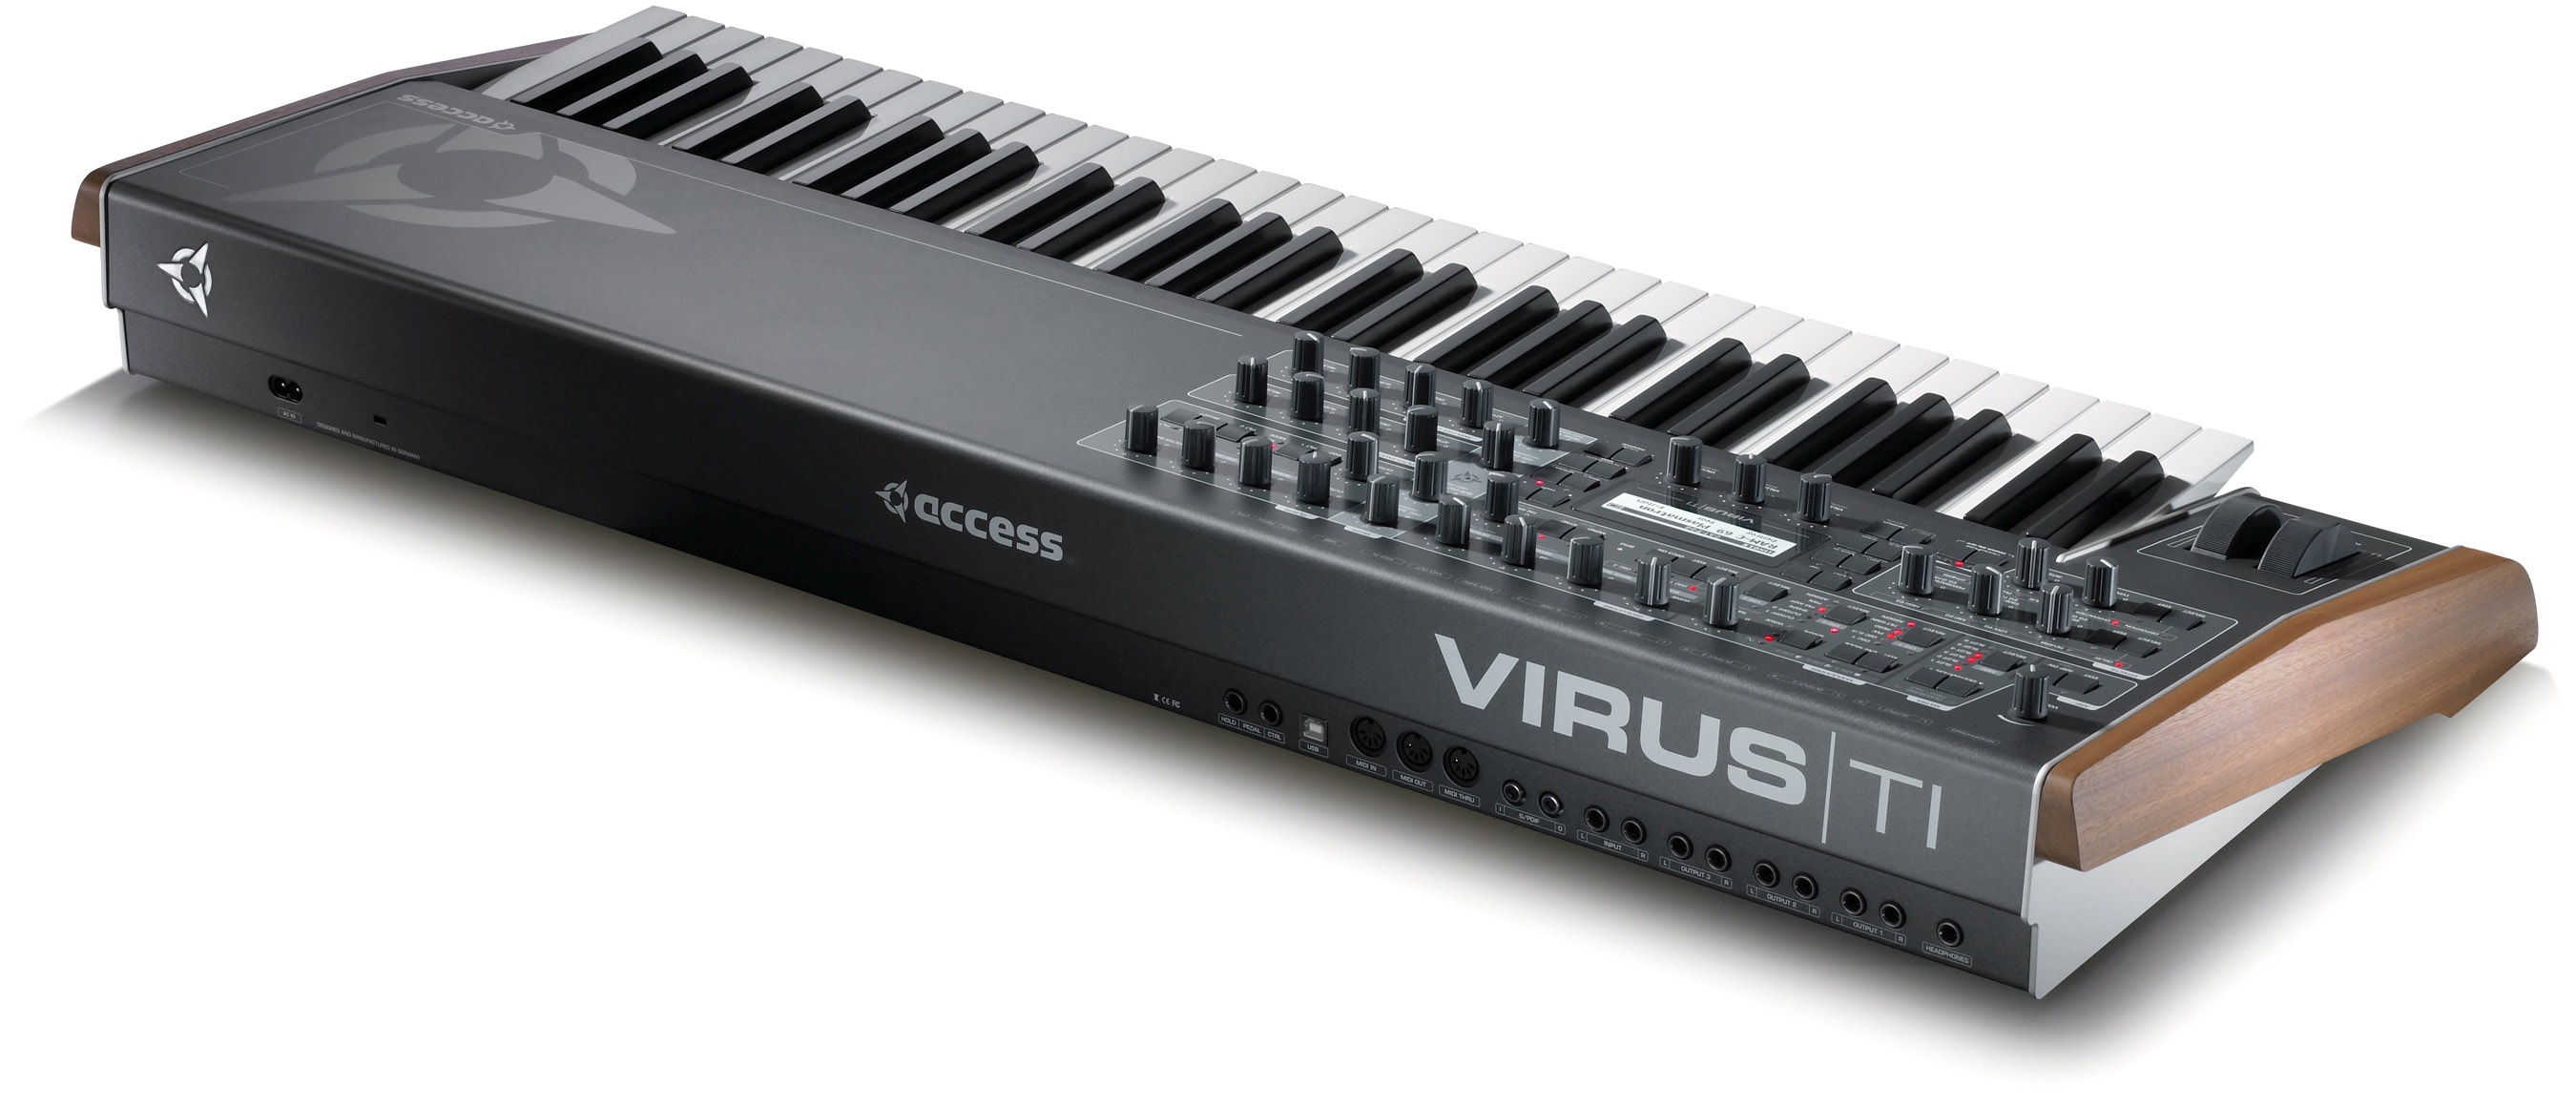 Virus ti. Синтезатор virus ti. Синтезатор access virus Keyboard. Access virus ti2. Access virus ti Keyboard.